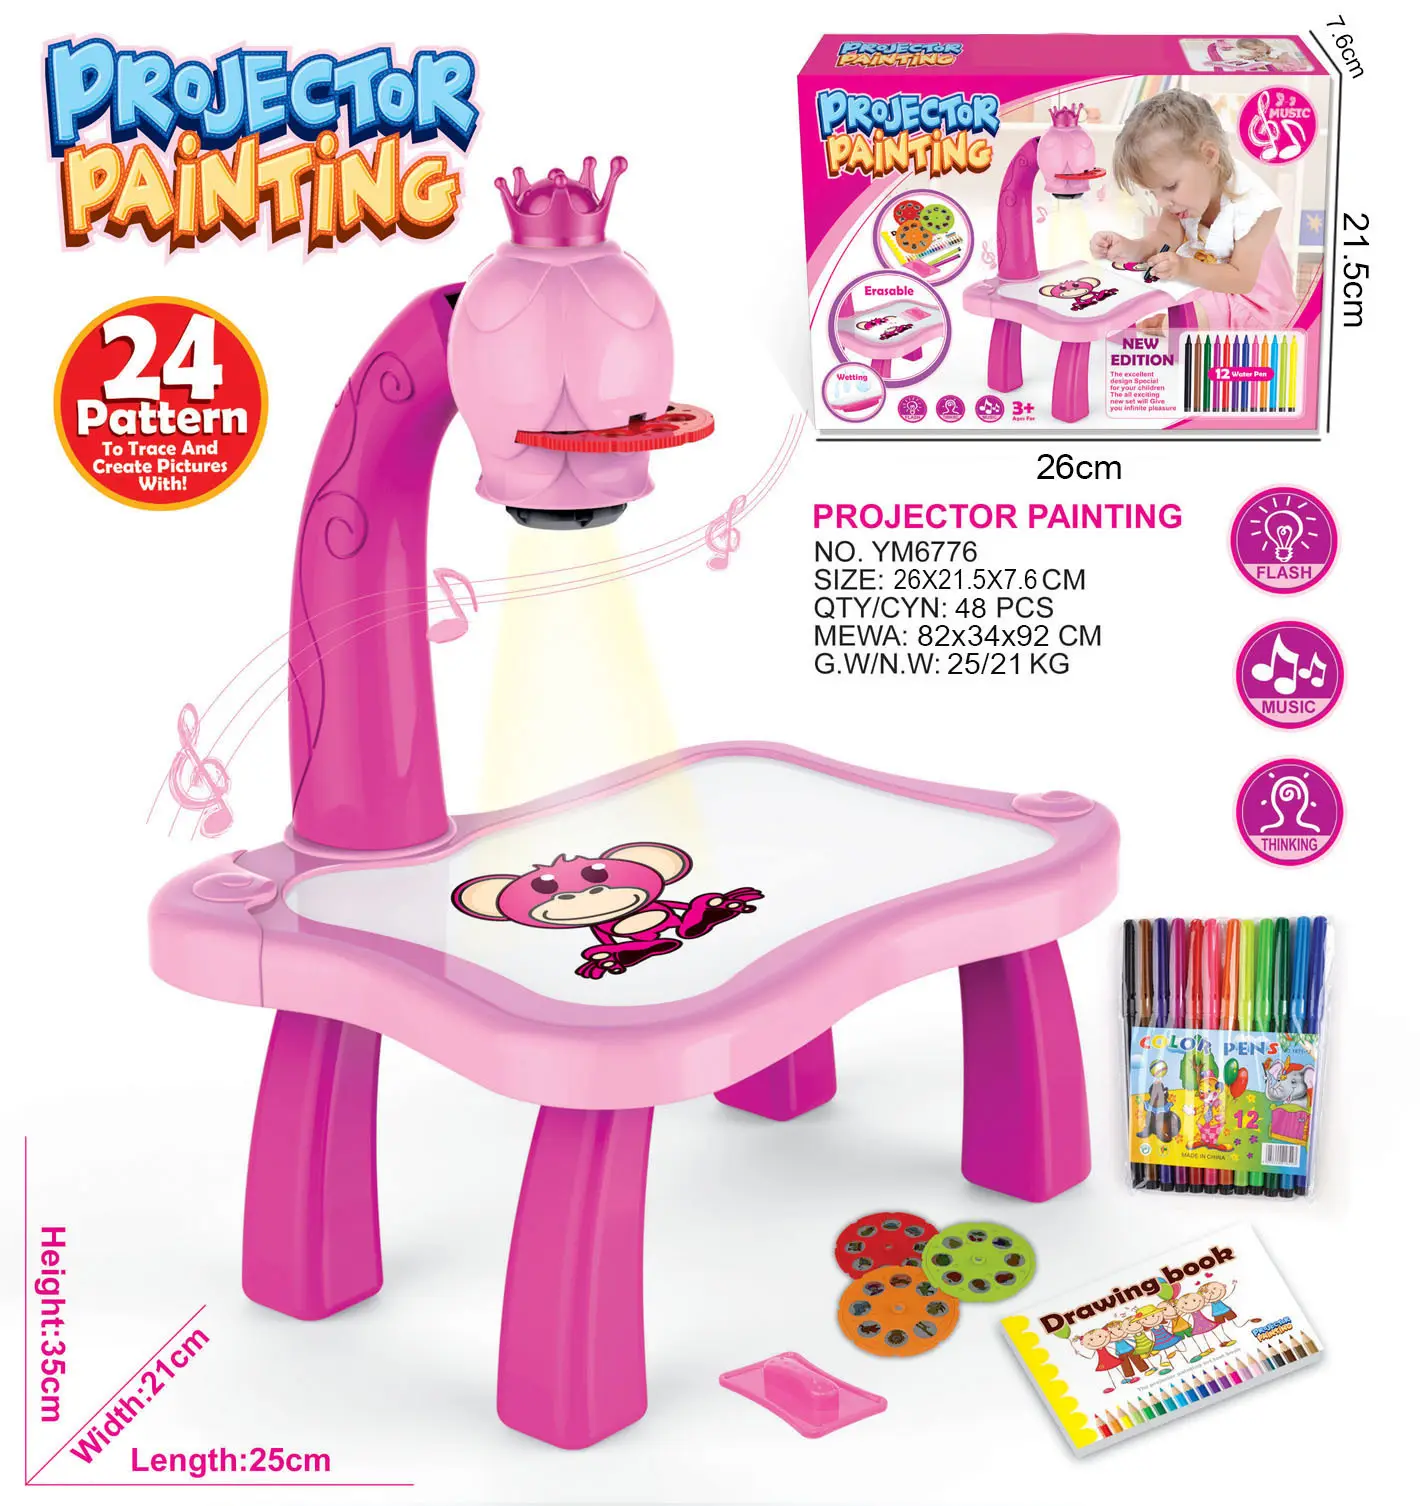 Proyector de tablero de dibujo para niños, juguetes de dibujo, proyector de pintura, otros juguetes y pasatiempos, gran oferta de Amazon